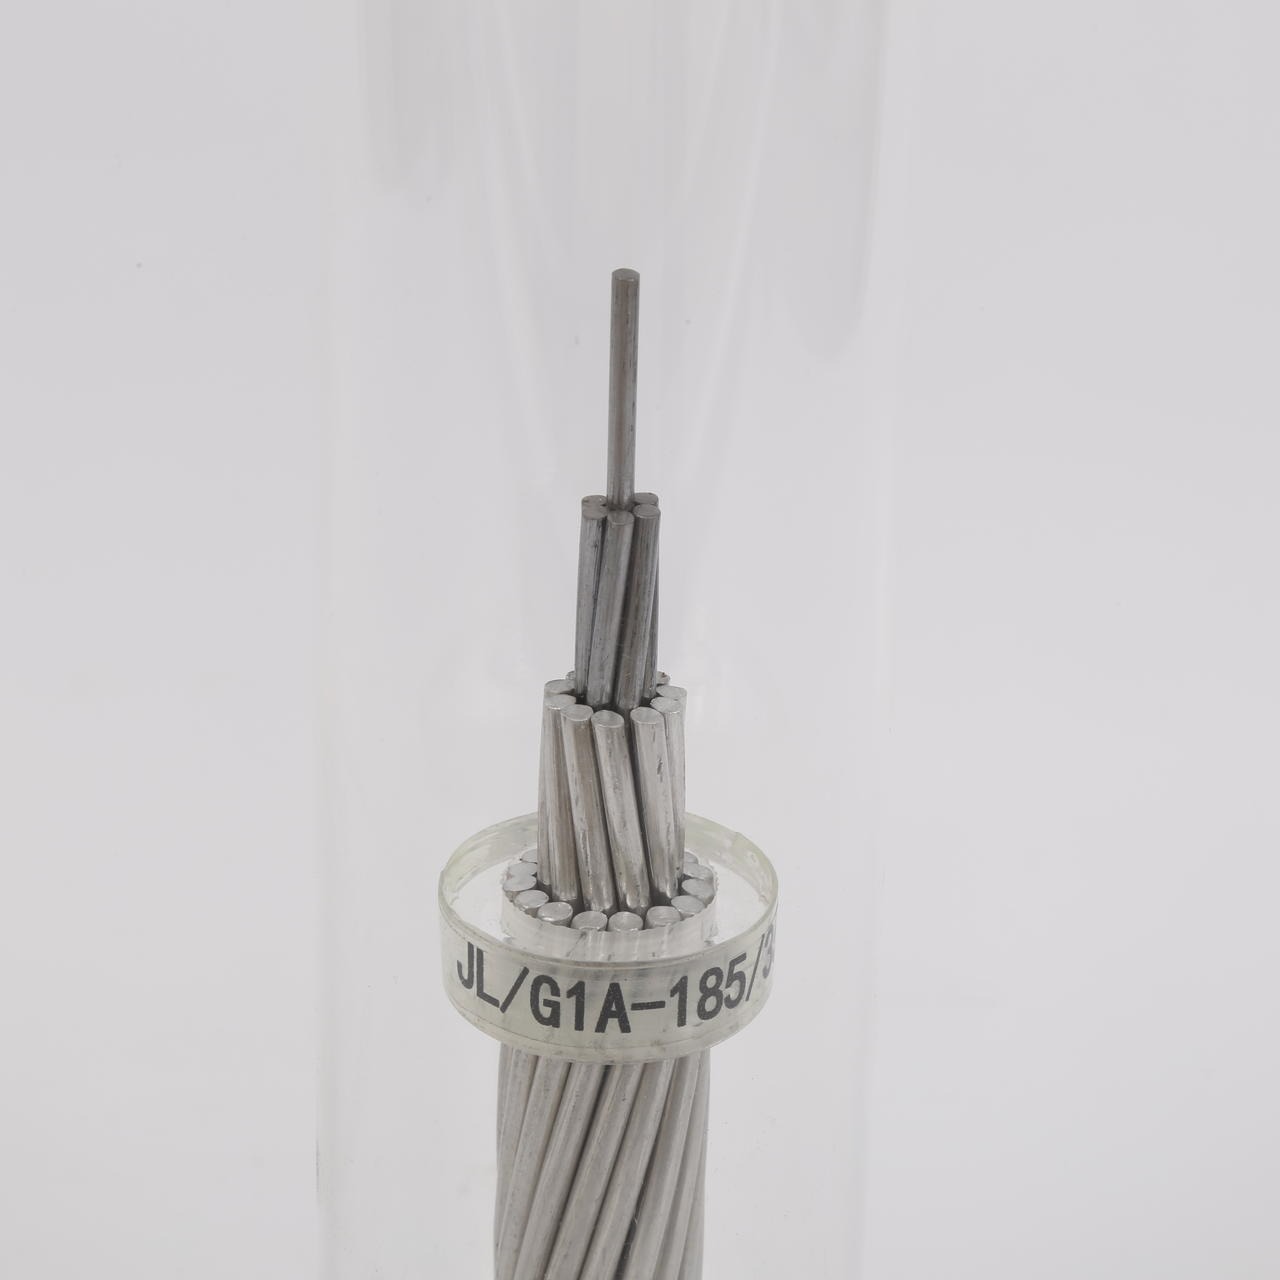 河北安通电线电缆有限公司铝包钢芯铝绞线，铝包钢绞线，JL/LB20A-185/25